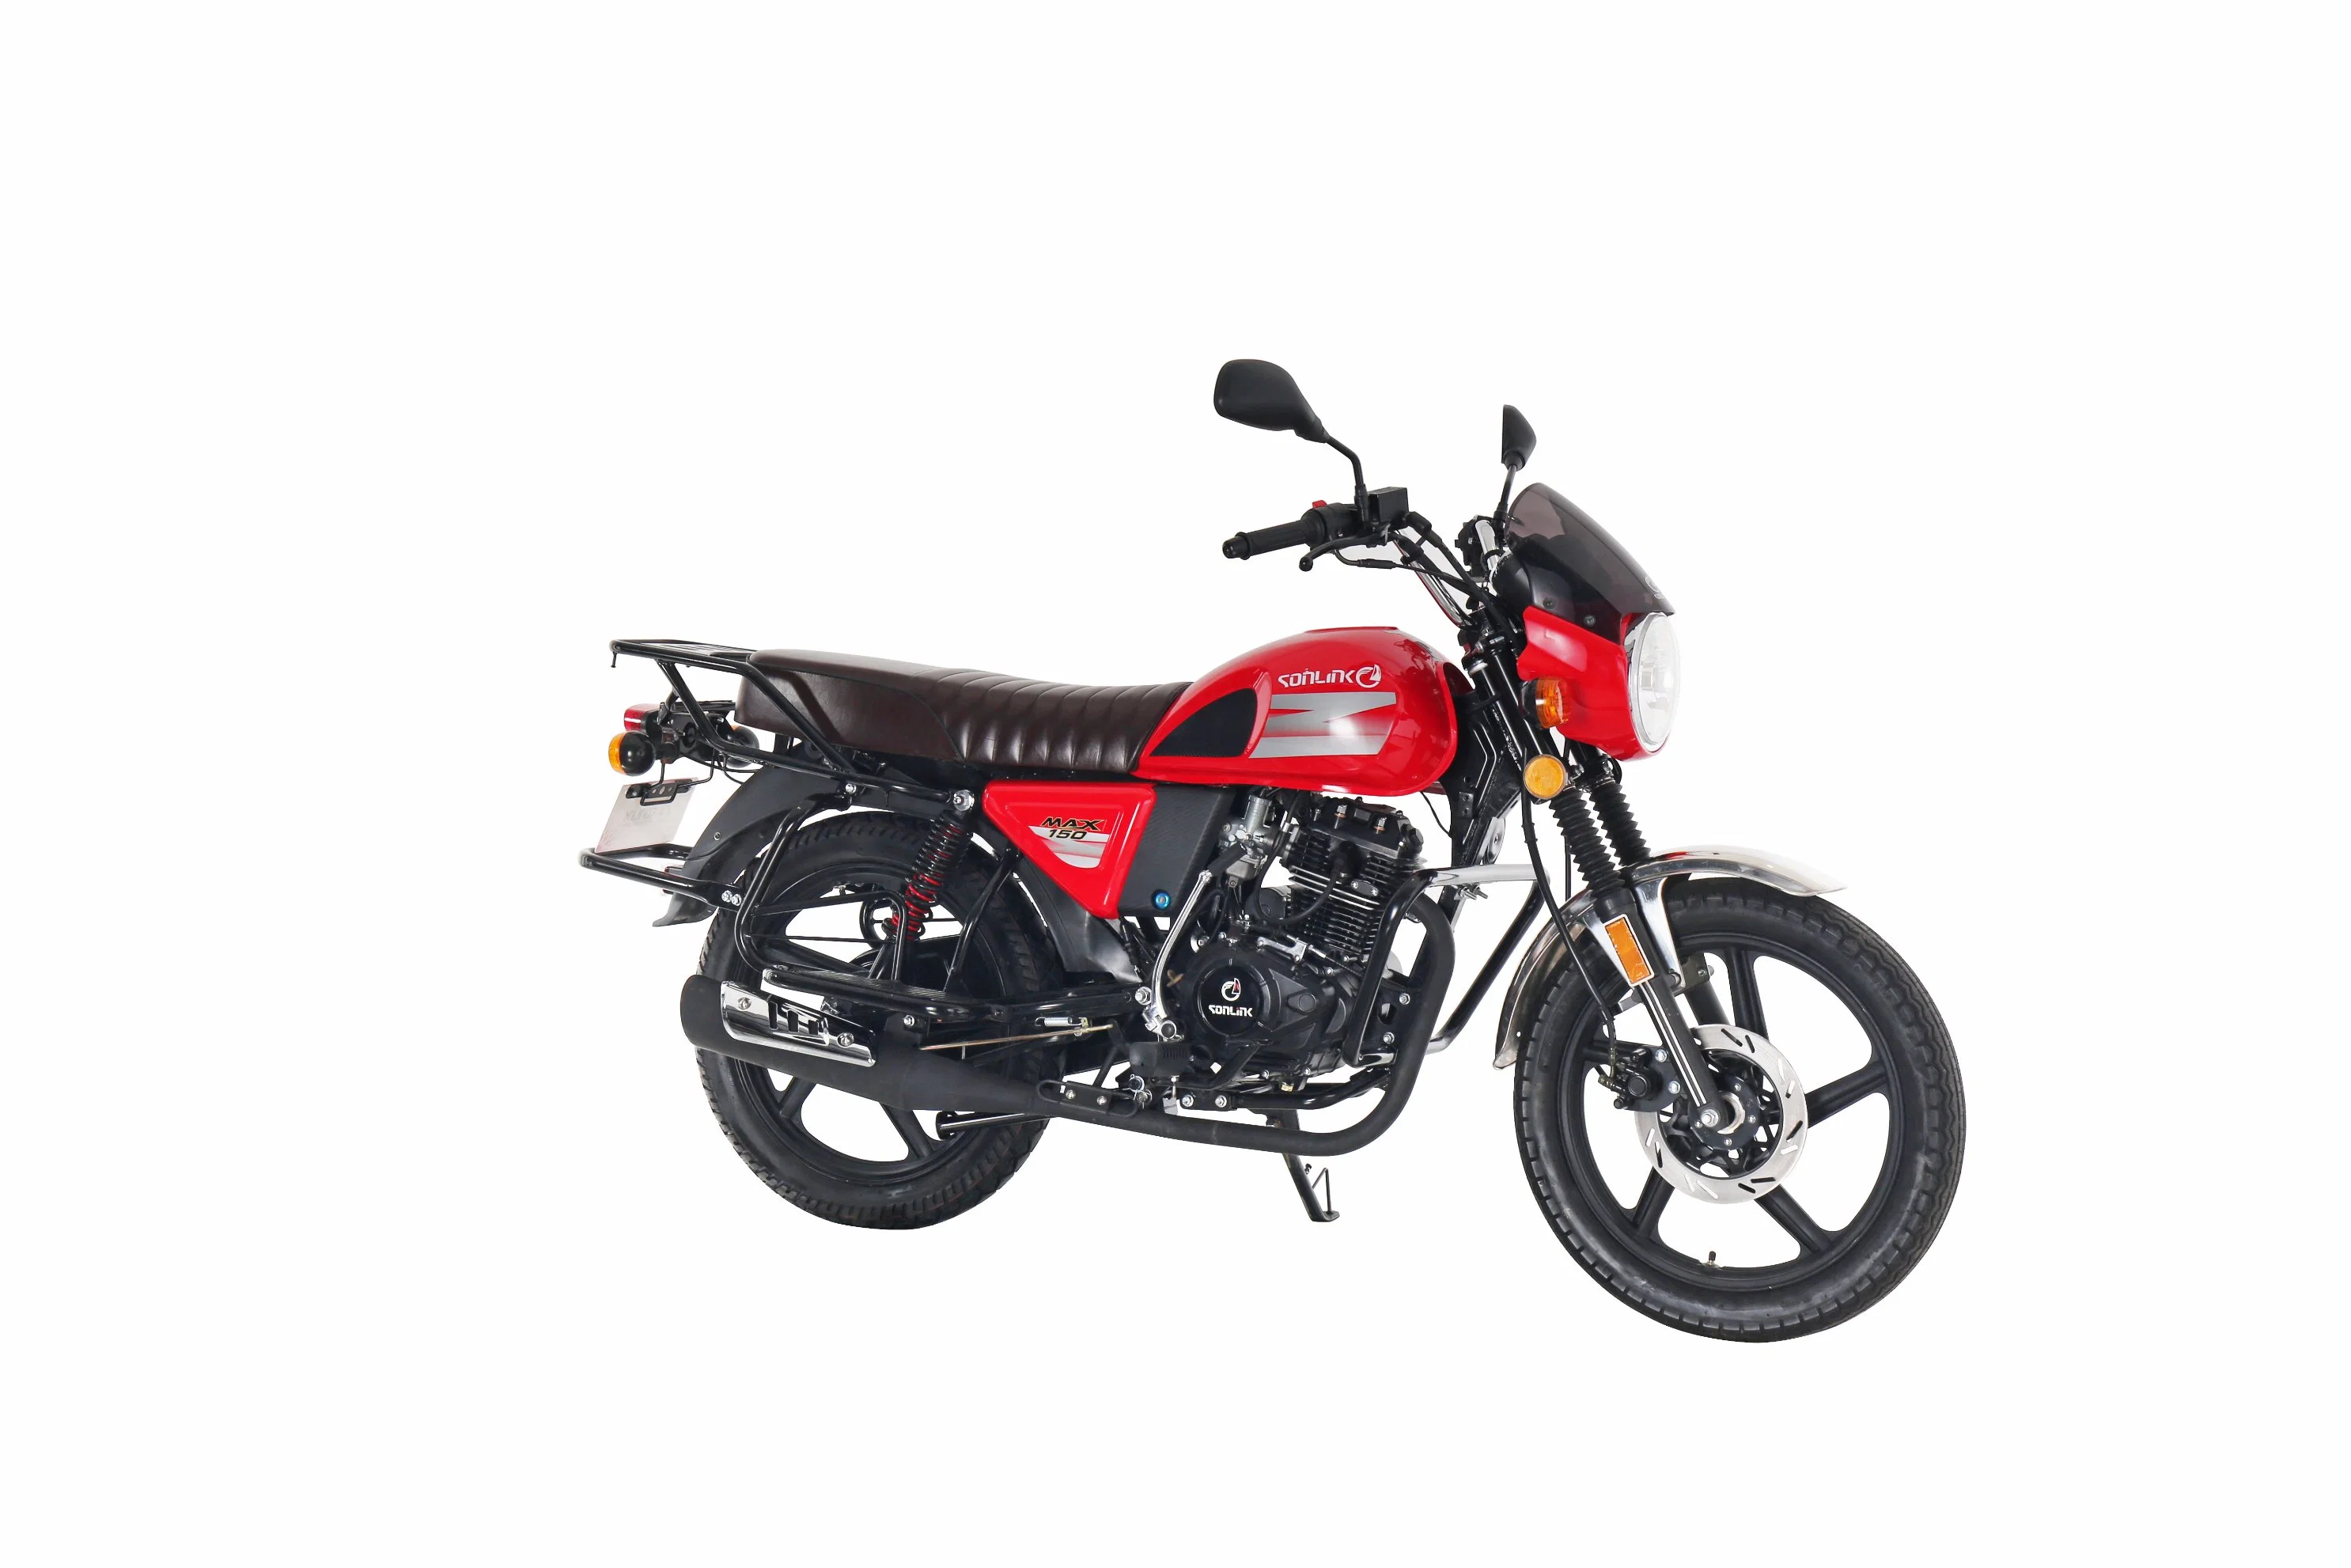 Loisir Moto 150cc motociclo / 200cc motociclo / 150cc Dirt Bike / bicicleta eléctrica